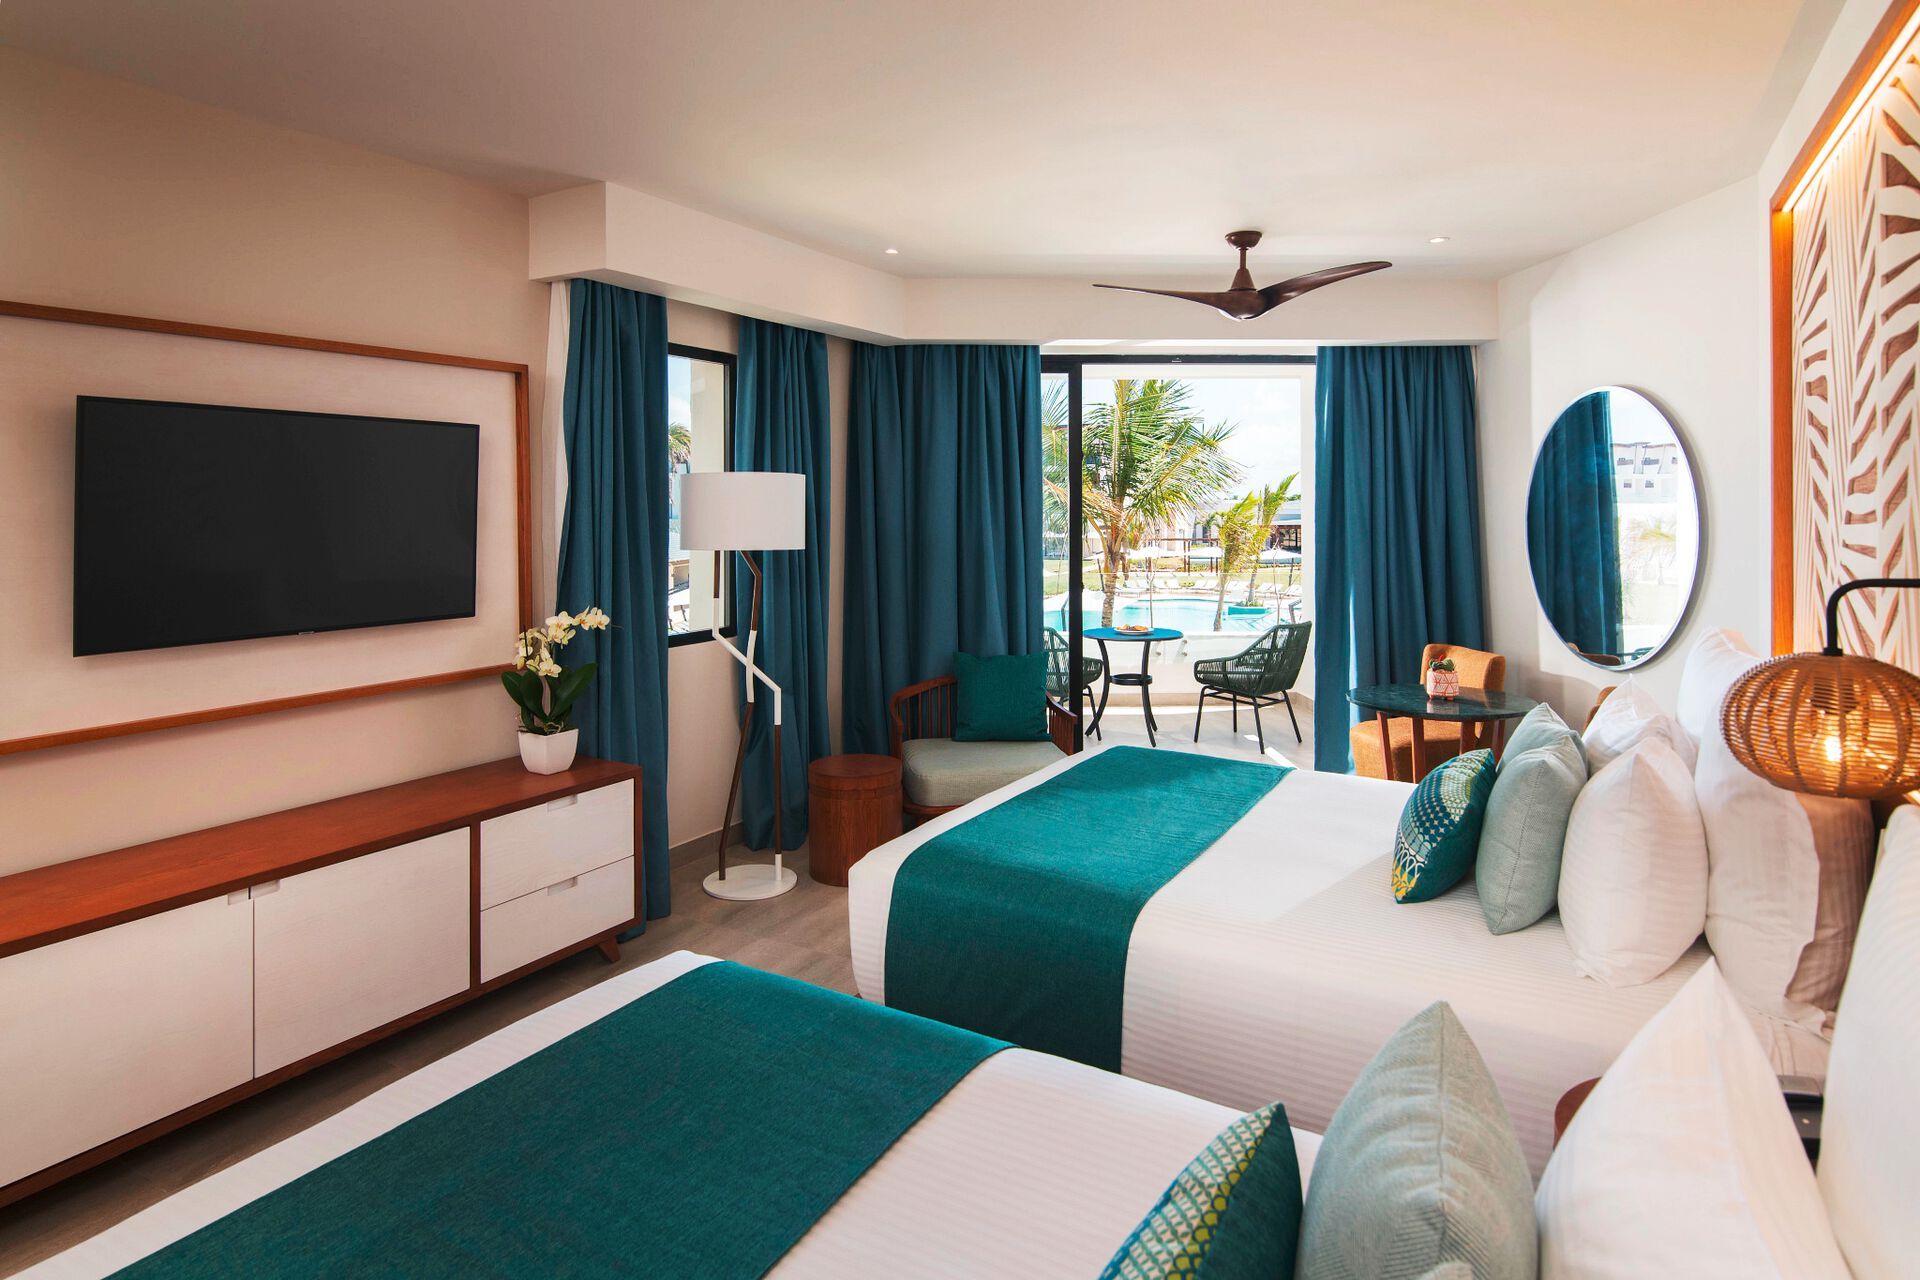 République Dominicaine - Hôtel Dreams Macao Beach Punta Cana 5*